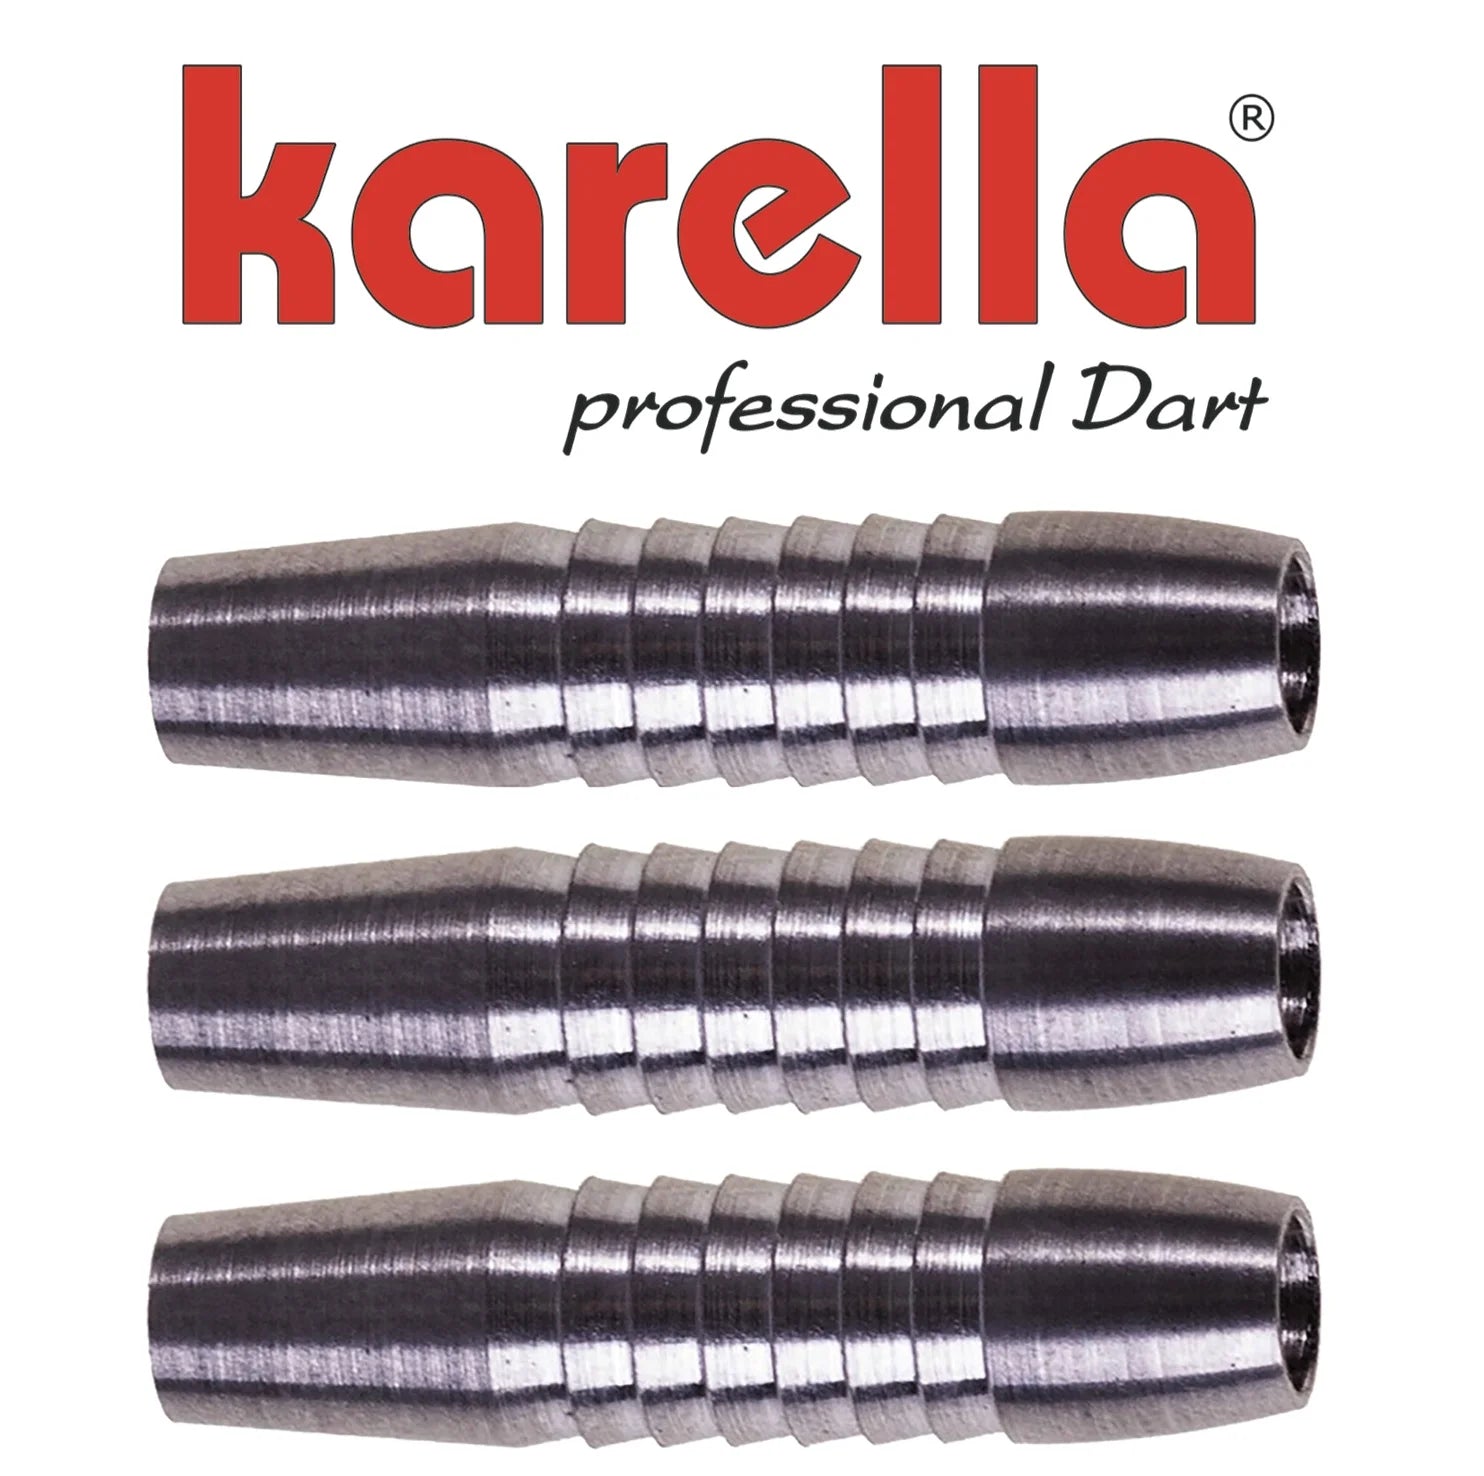 Karella Soft Dart Barrel Profi Line PLS-04 16g/80%